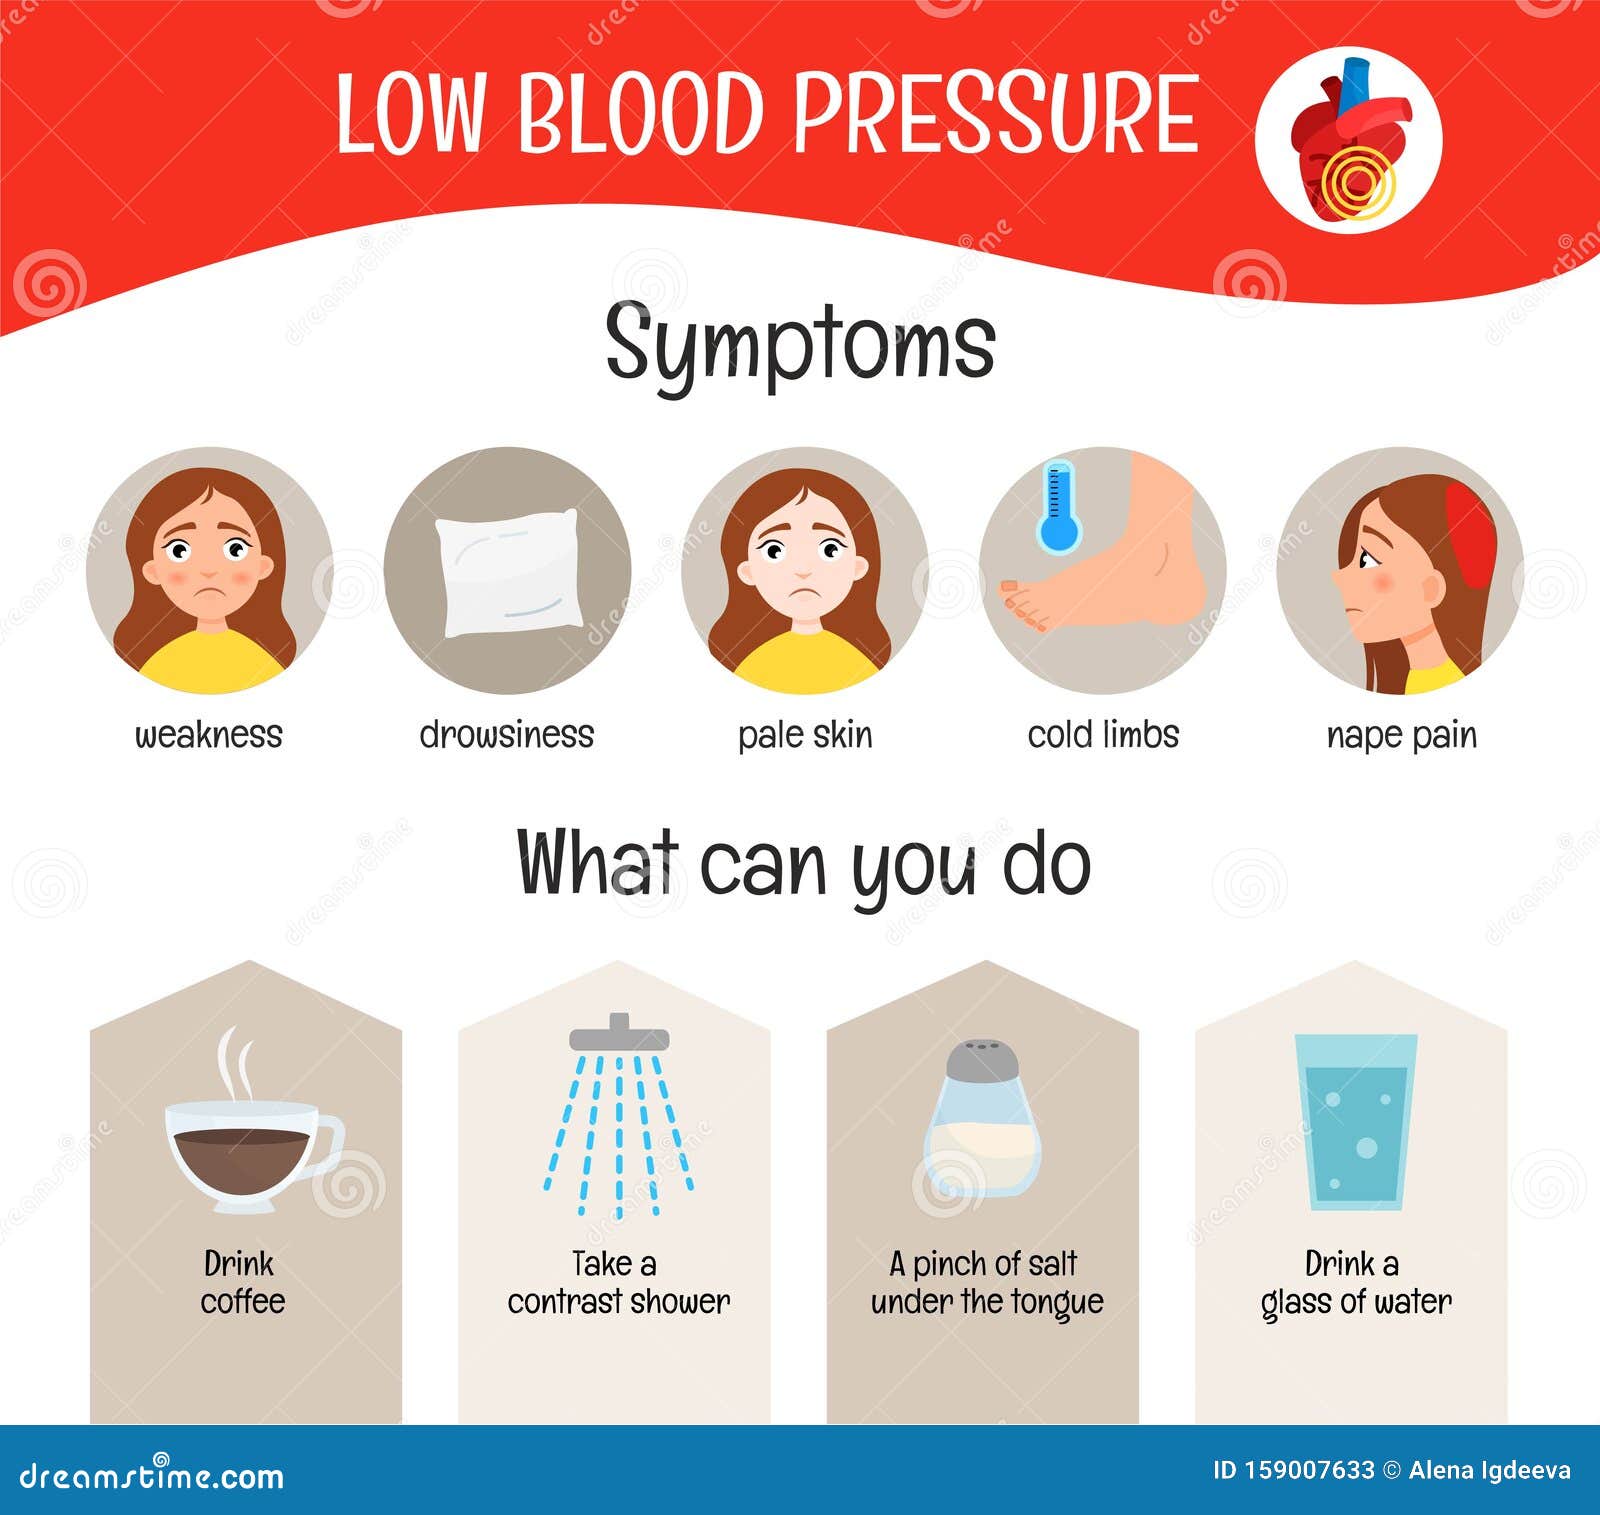 low blood pressure)